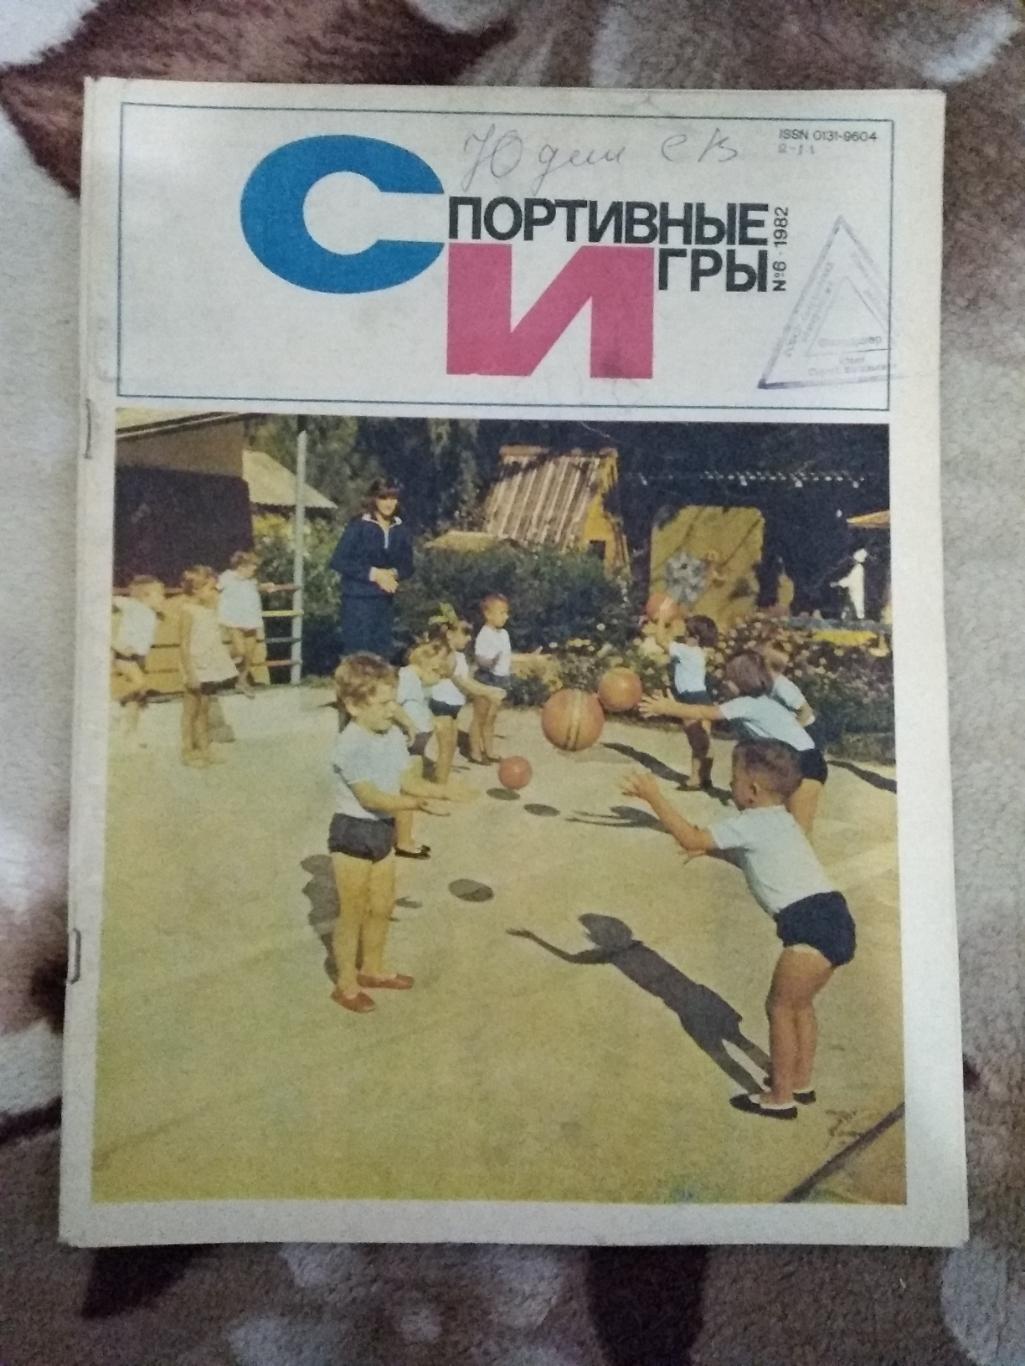 Журнал.Спортивные игры № 6 1982 г.